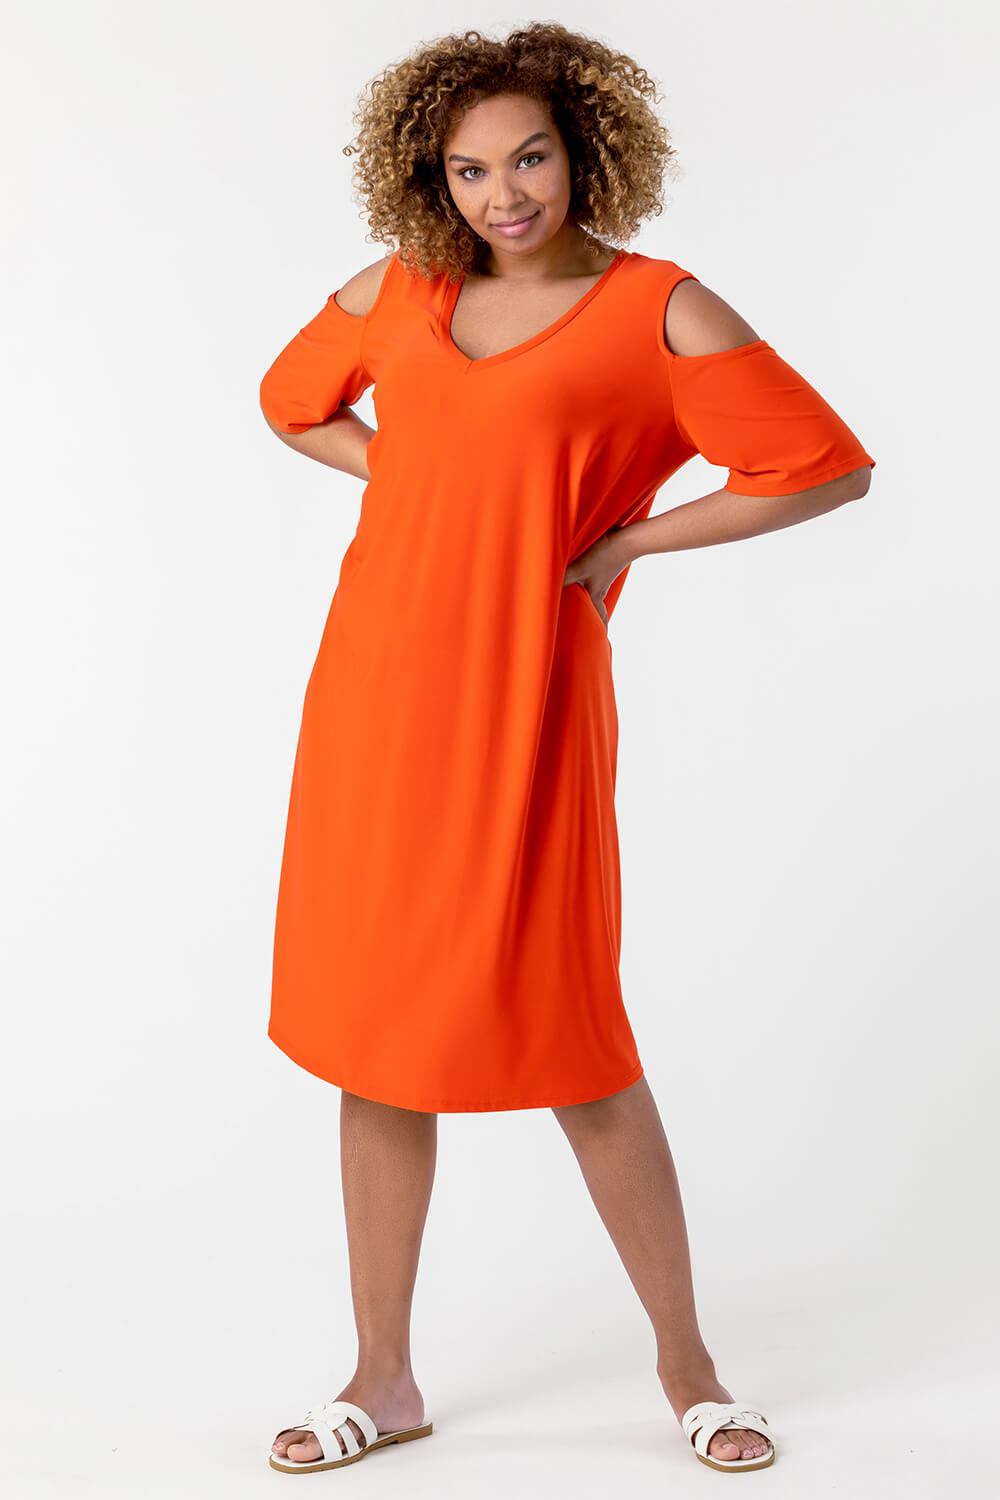 ORANGE Curve Cold Shoulder Jersey Dress, Image 3 of 4